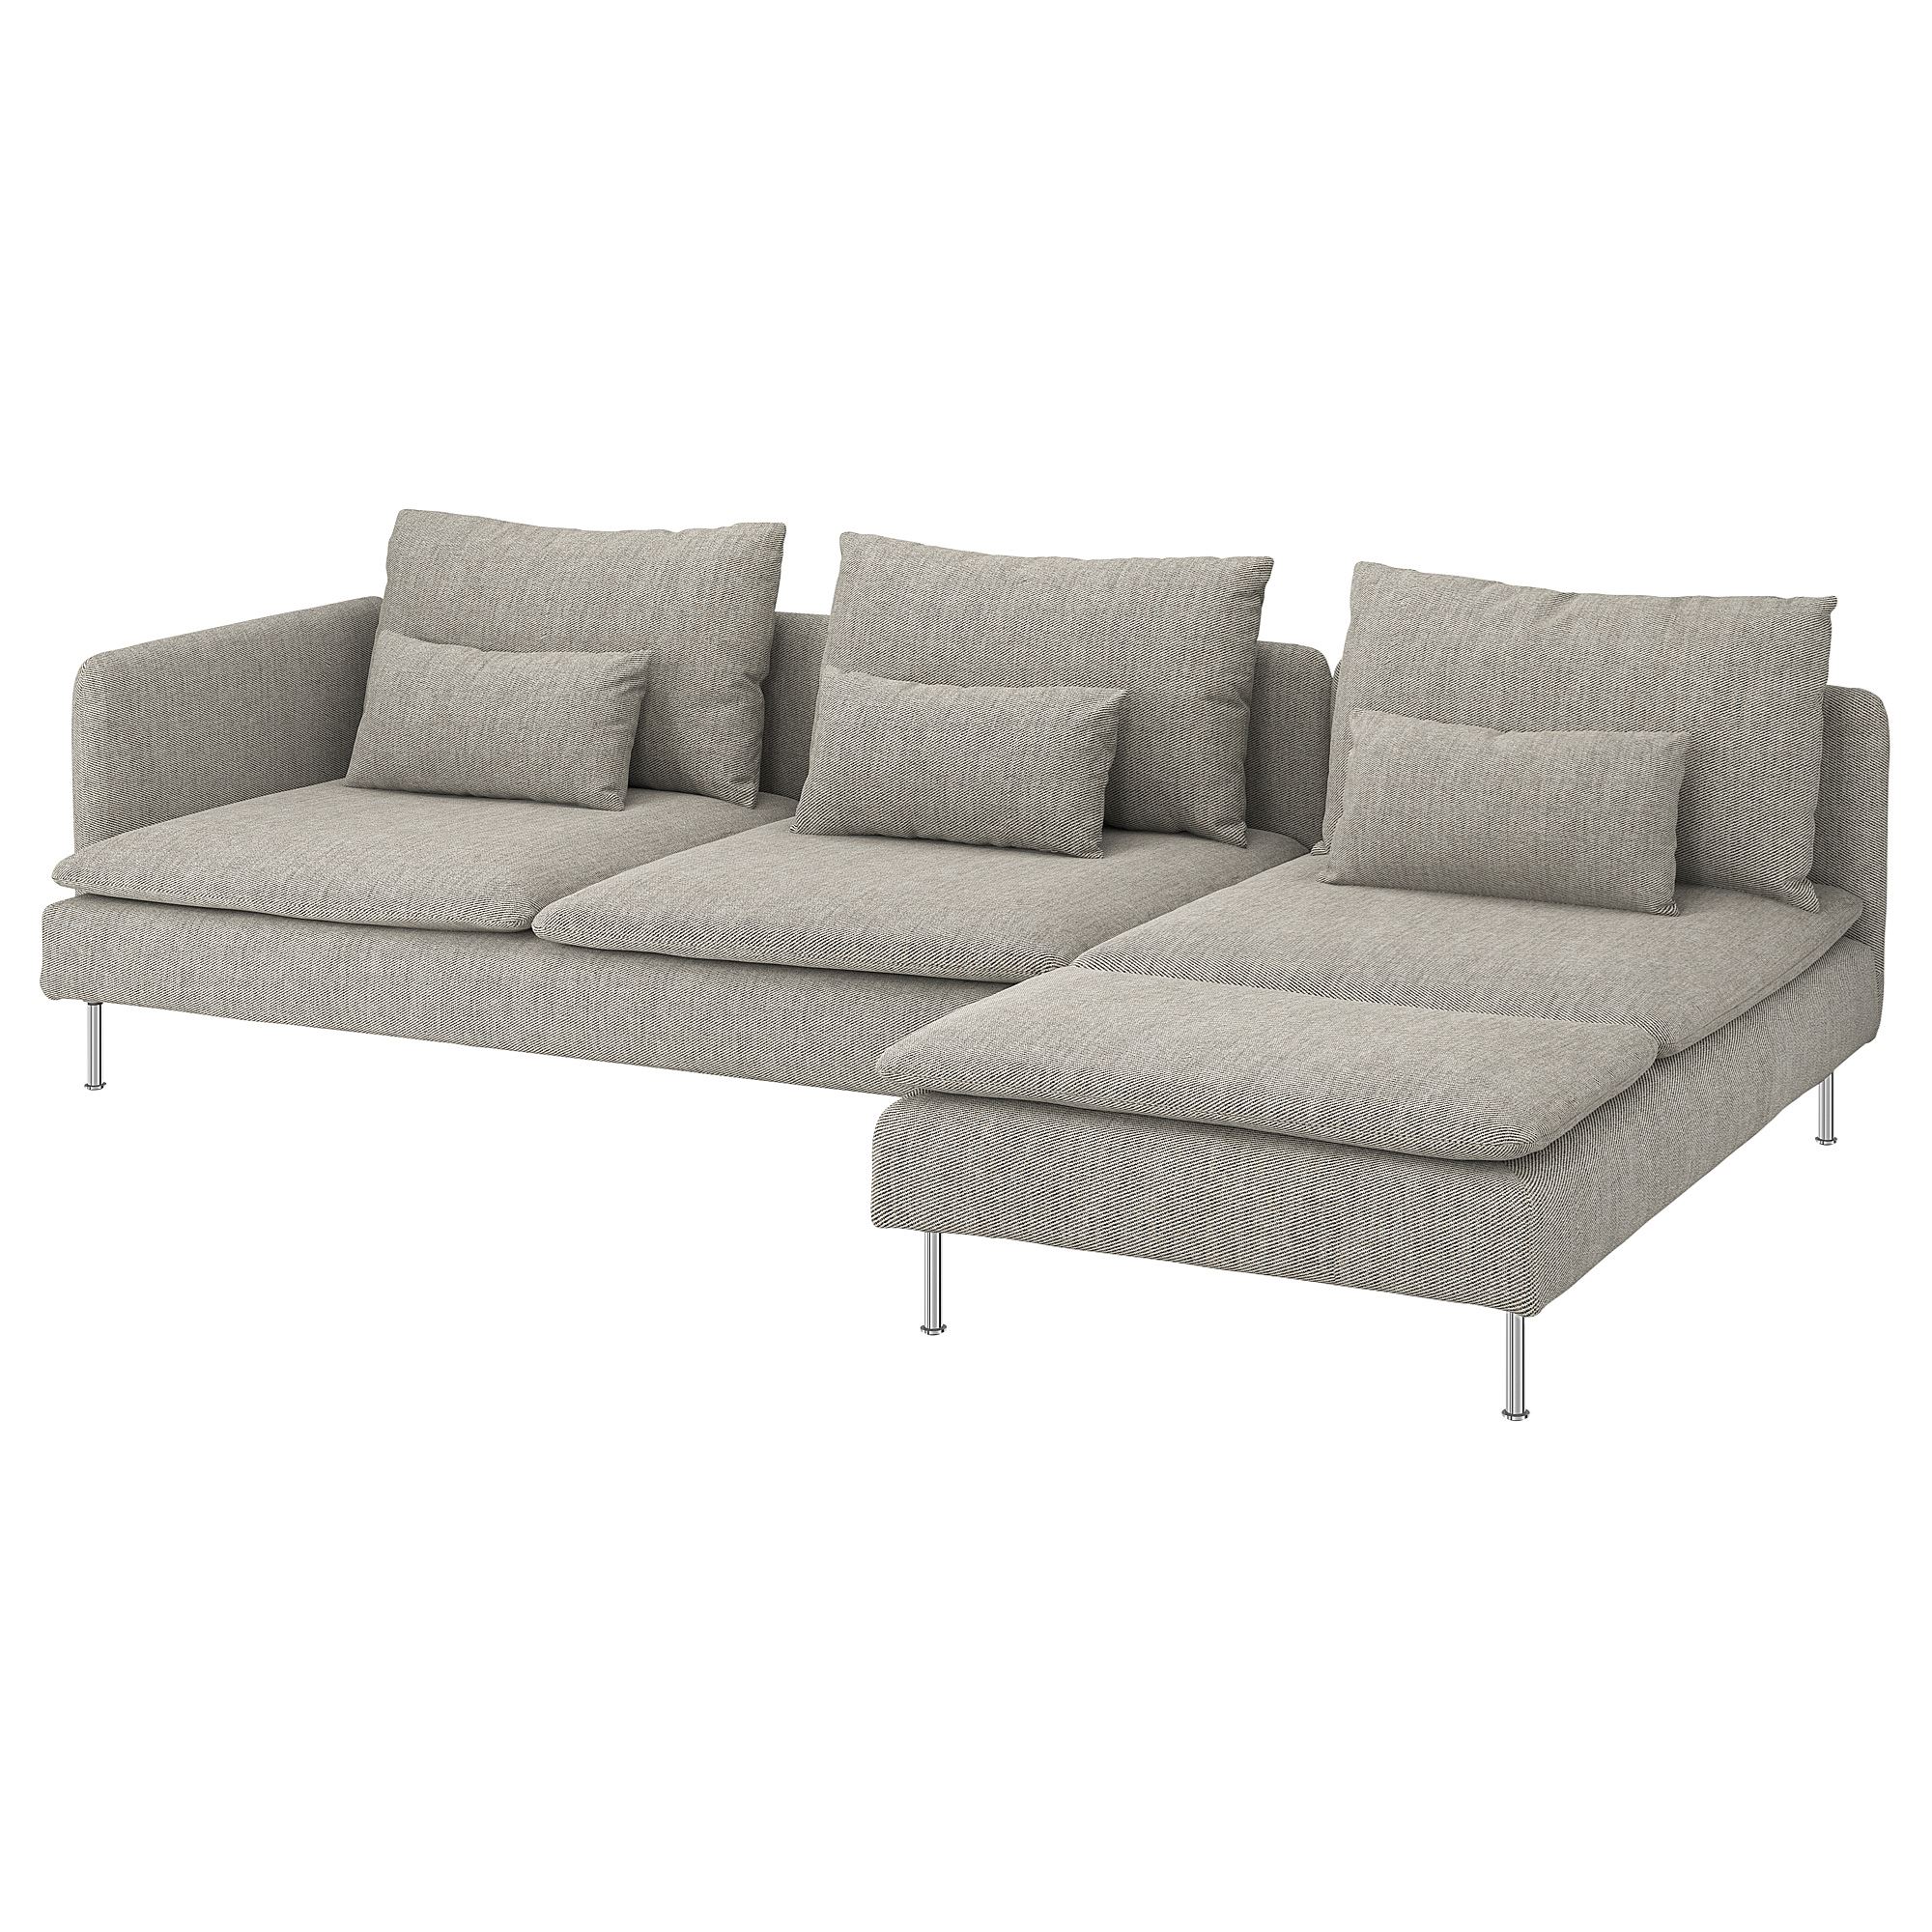 SÖDERHAMN viarp bej-kahverengi 3'lü kanepe ve uzanma koltuğu | IKEA